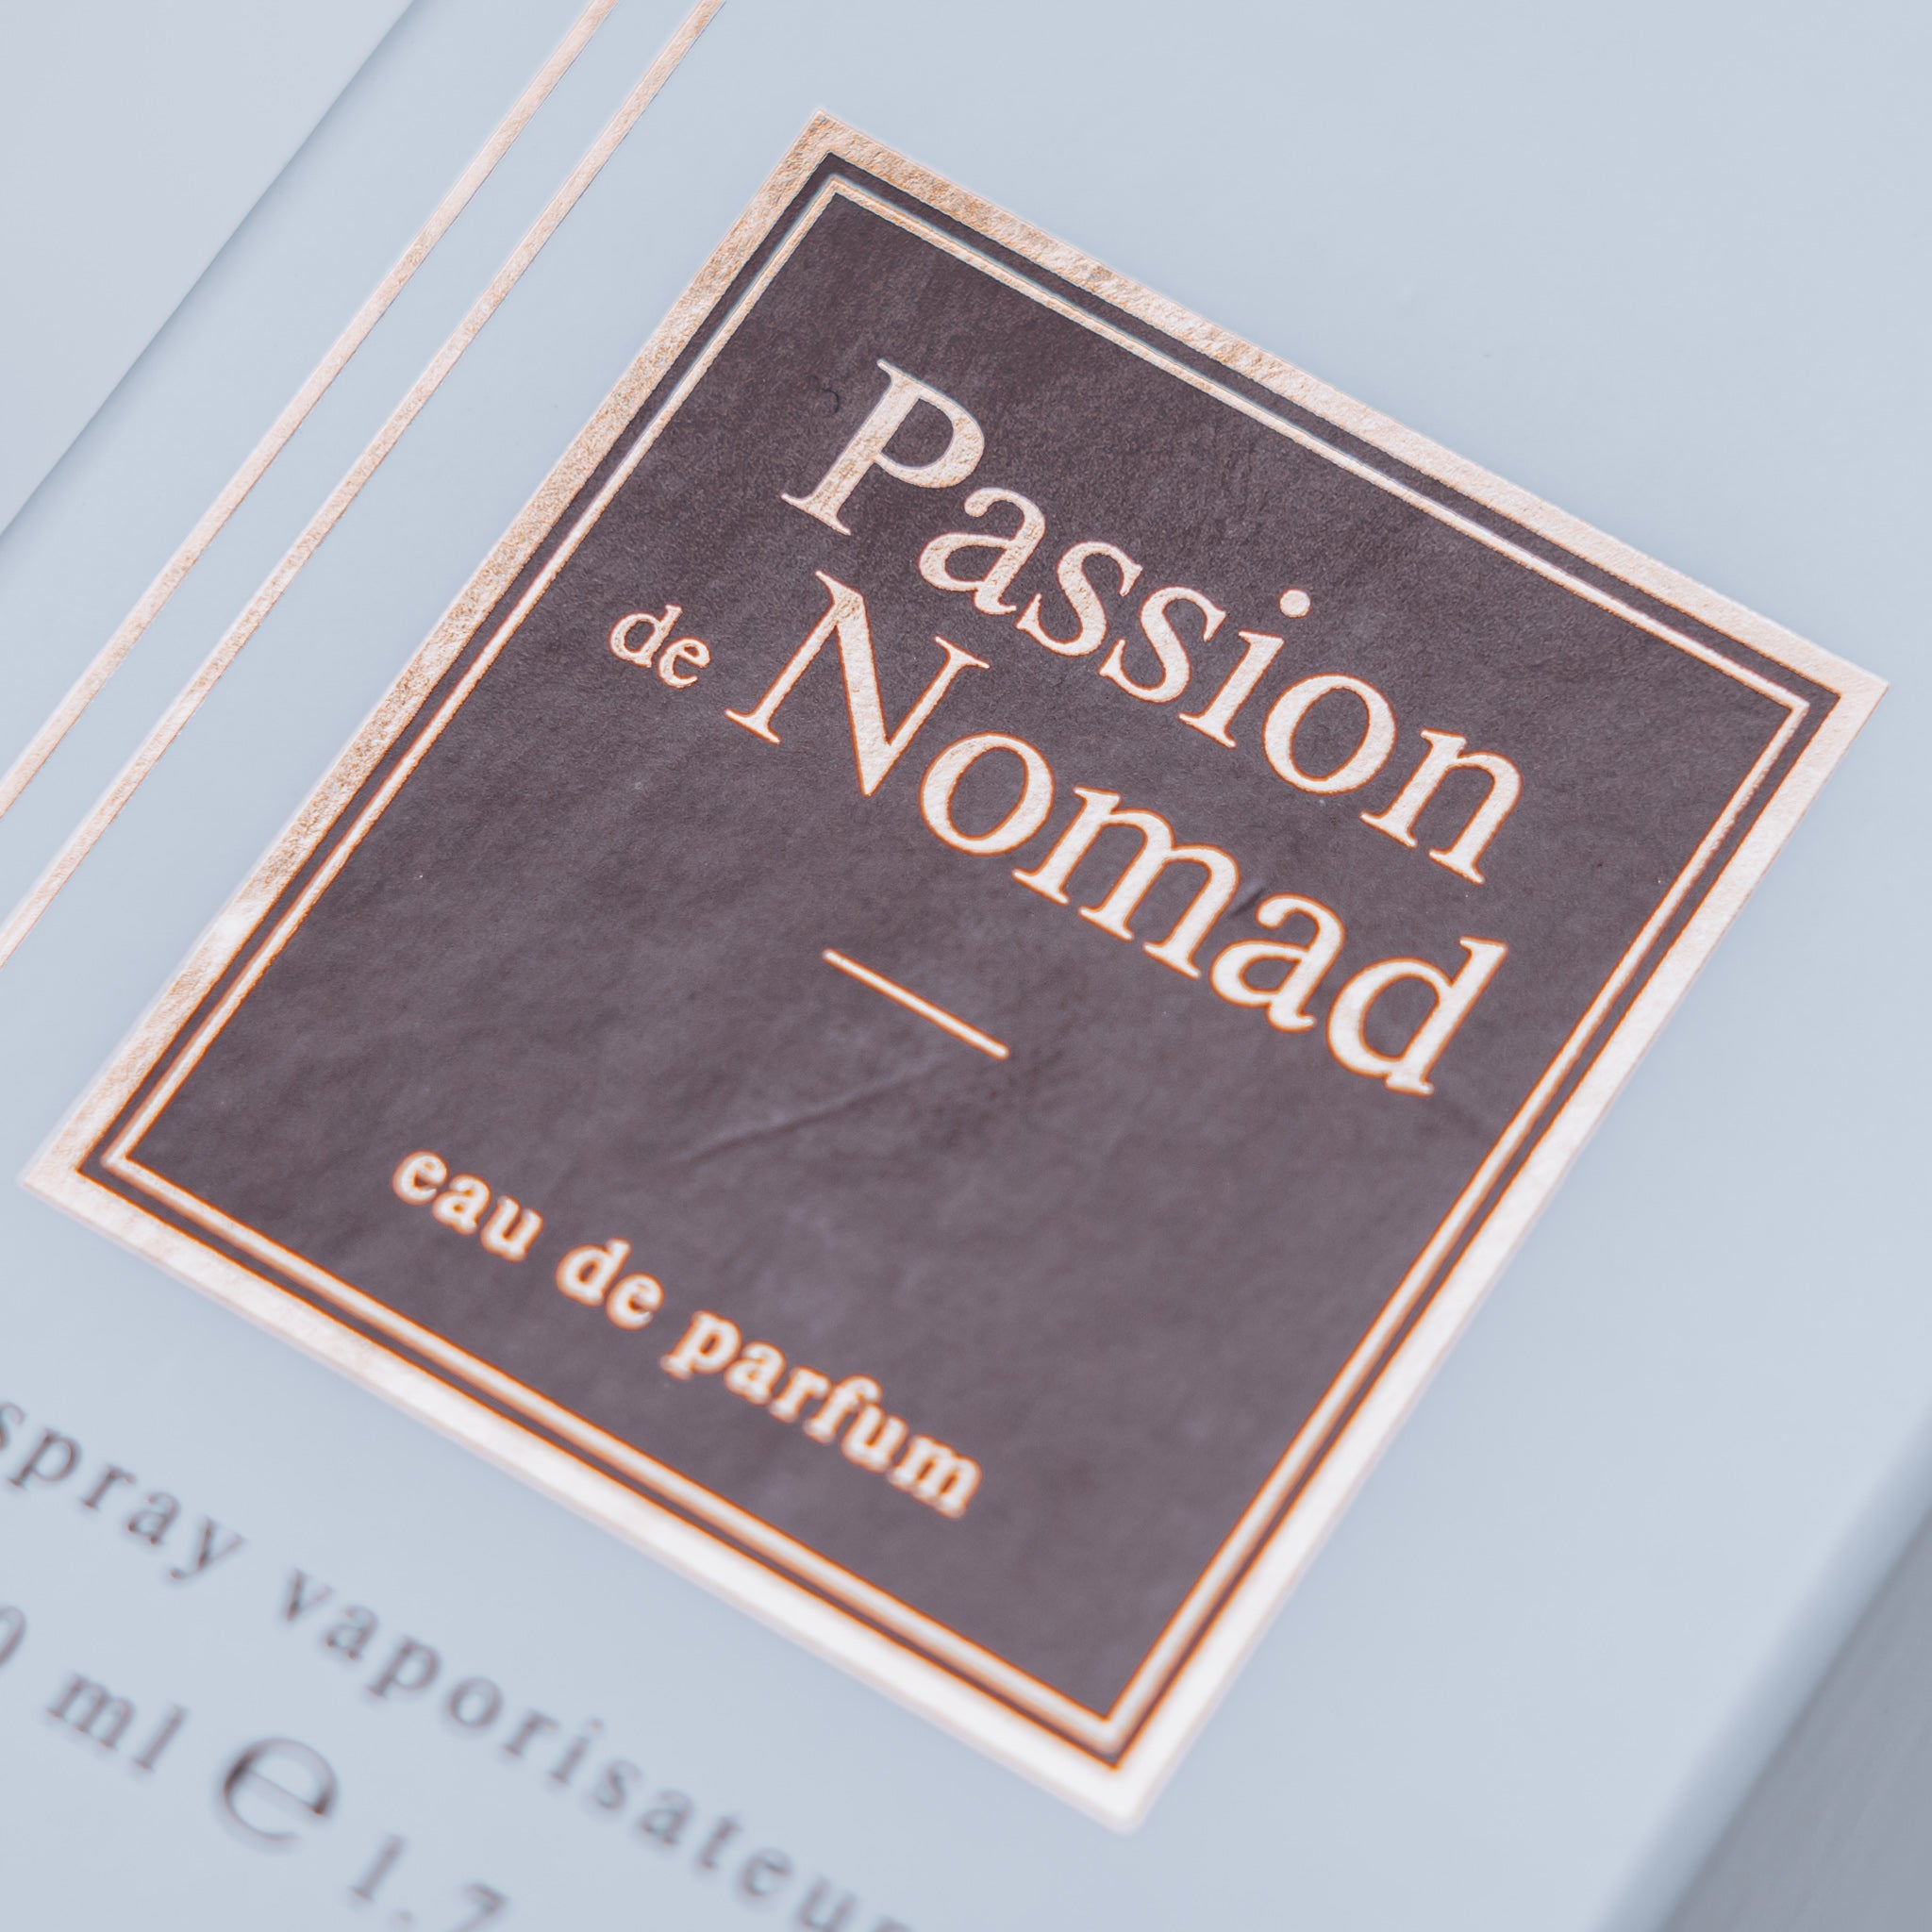 Passion de Nomad - Alternative to Ombre Nomad (Louis Vuitton